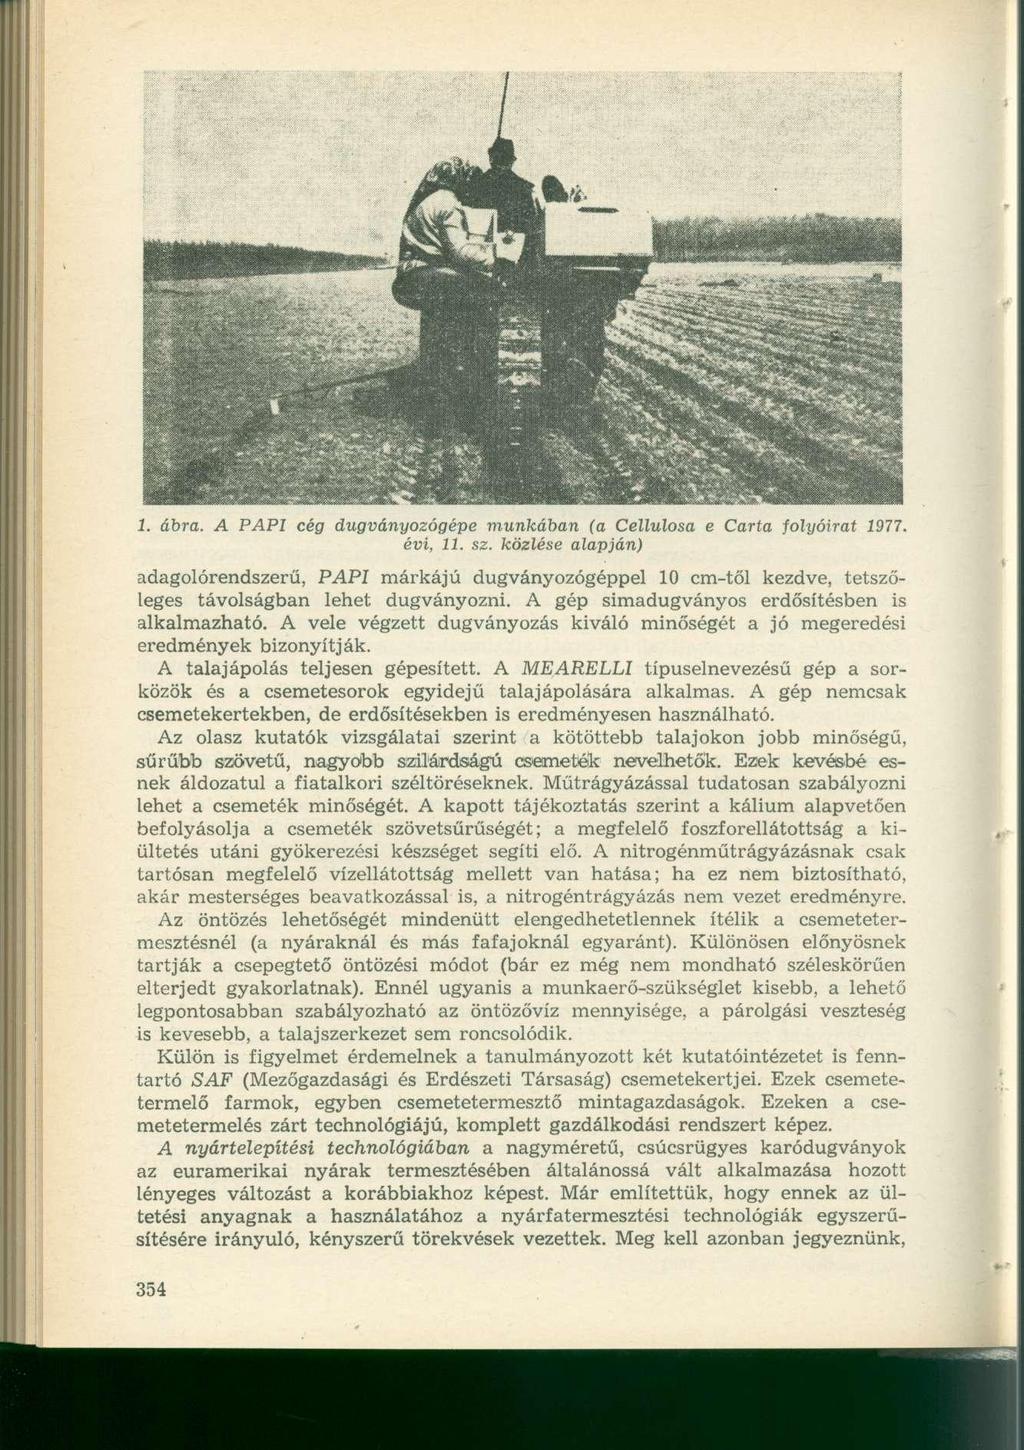 1. ábra. A PAPI cég dugványozógépe munkában (a Cellulosa e Carta folyóirat 1977. évi, 11. sz.